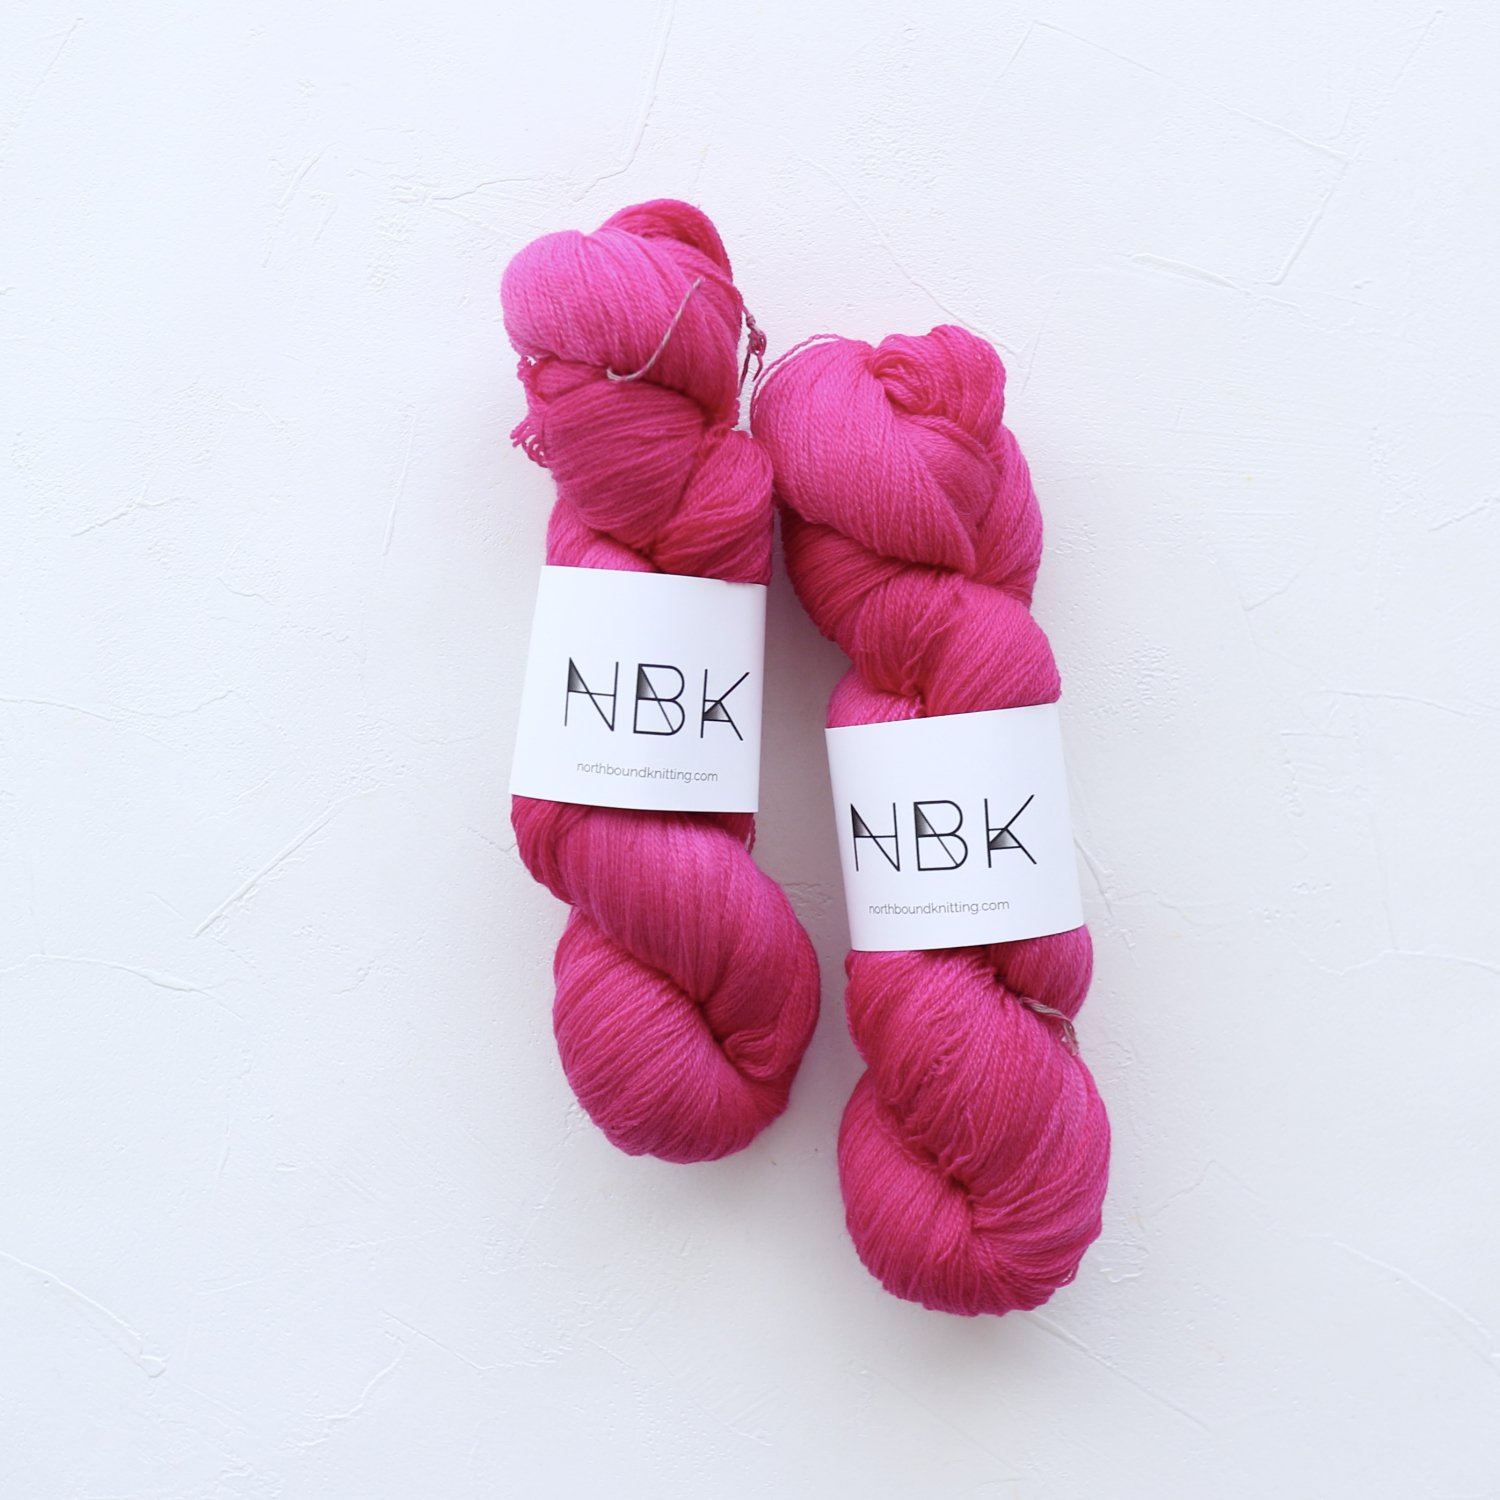 【Northbound Knitting】<br>Superwash Merino Lace<br>OLEANDER